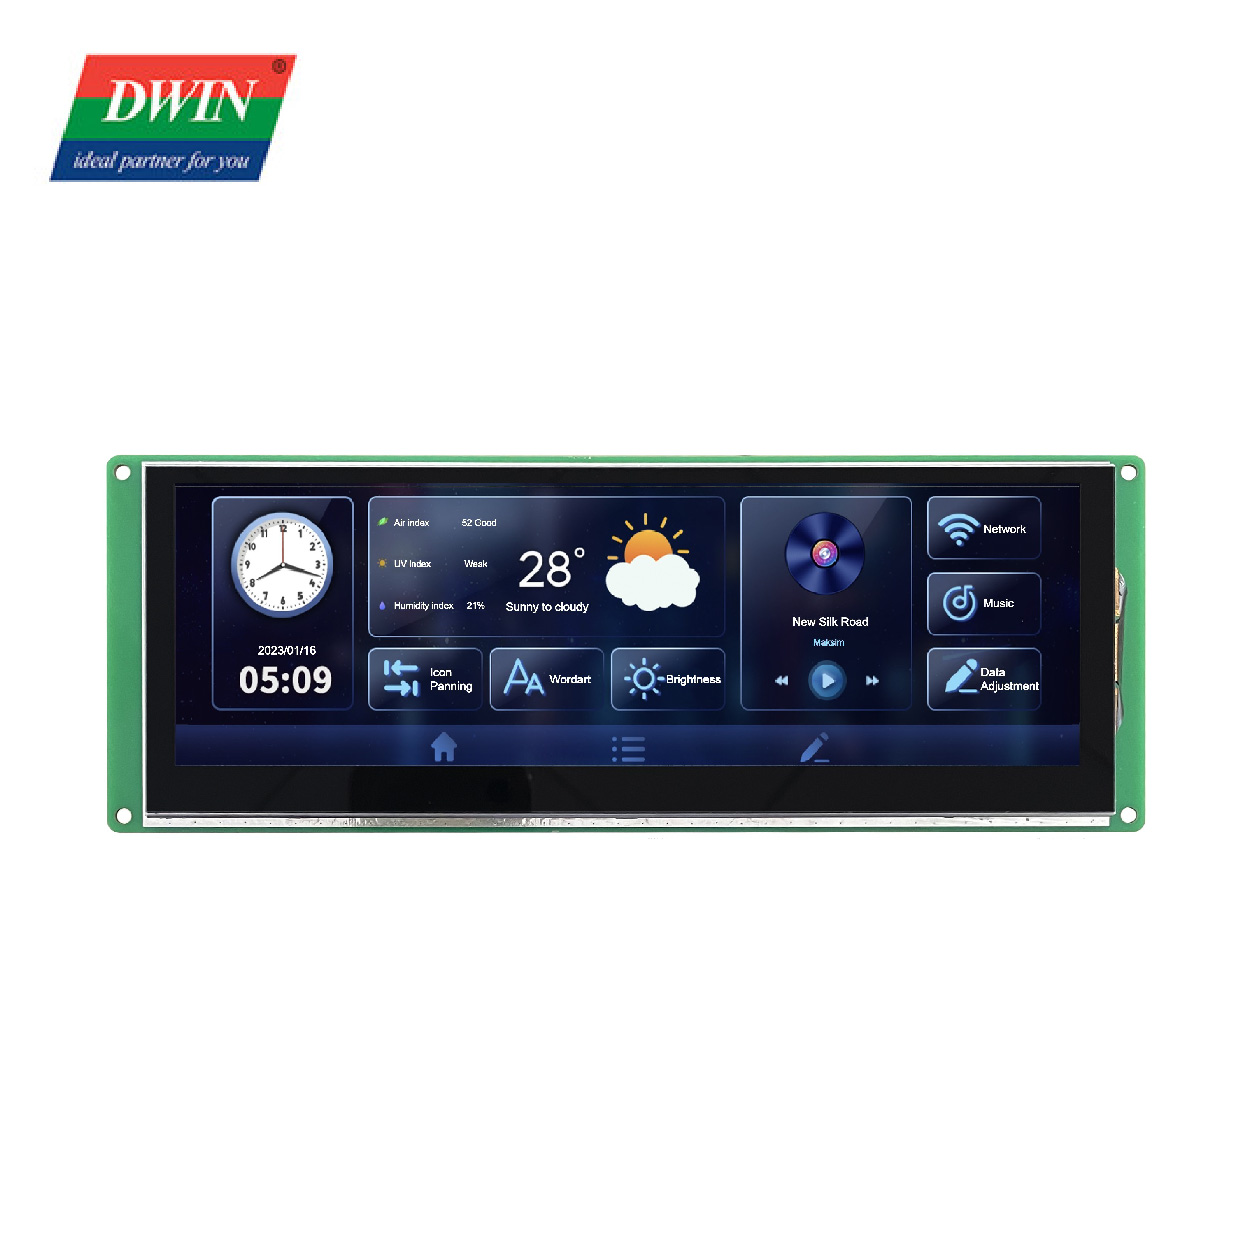 Pasek portu szeregowego LCD o przekątnej 7,4 cala DMG12400C074_03W (klasa komercyjna)